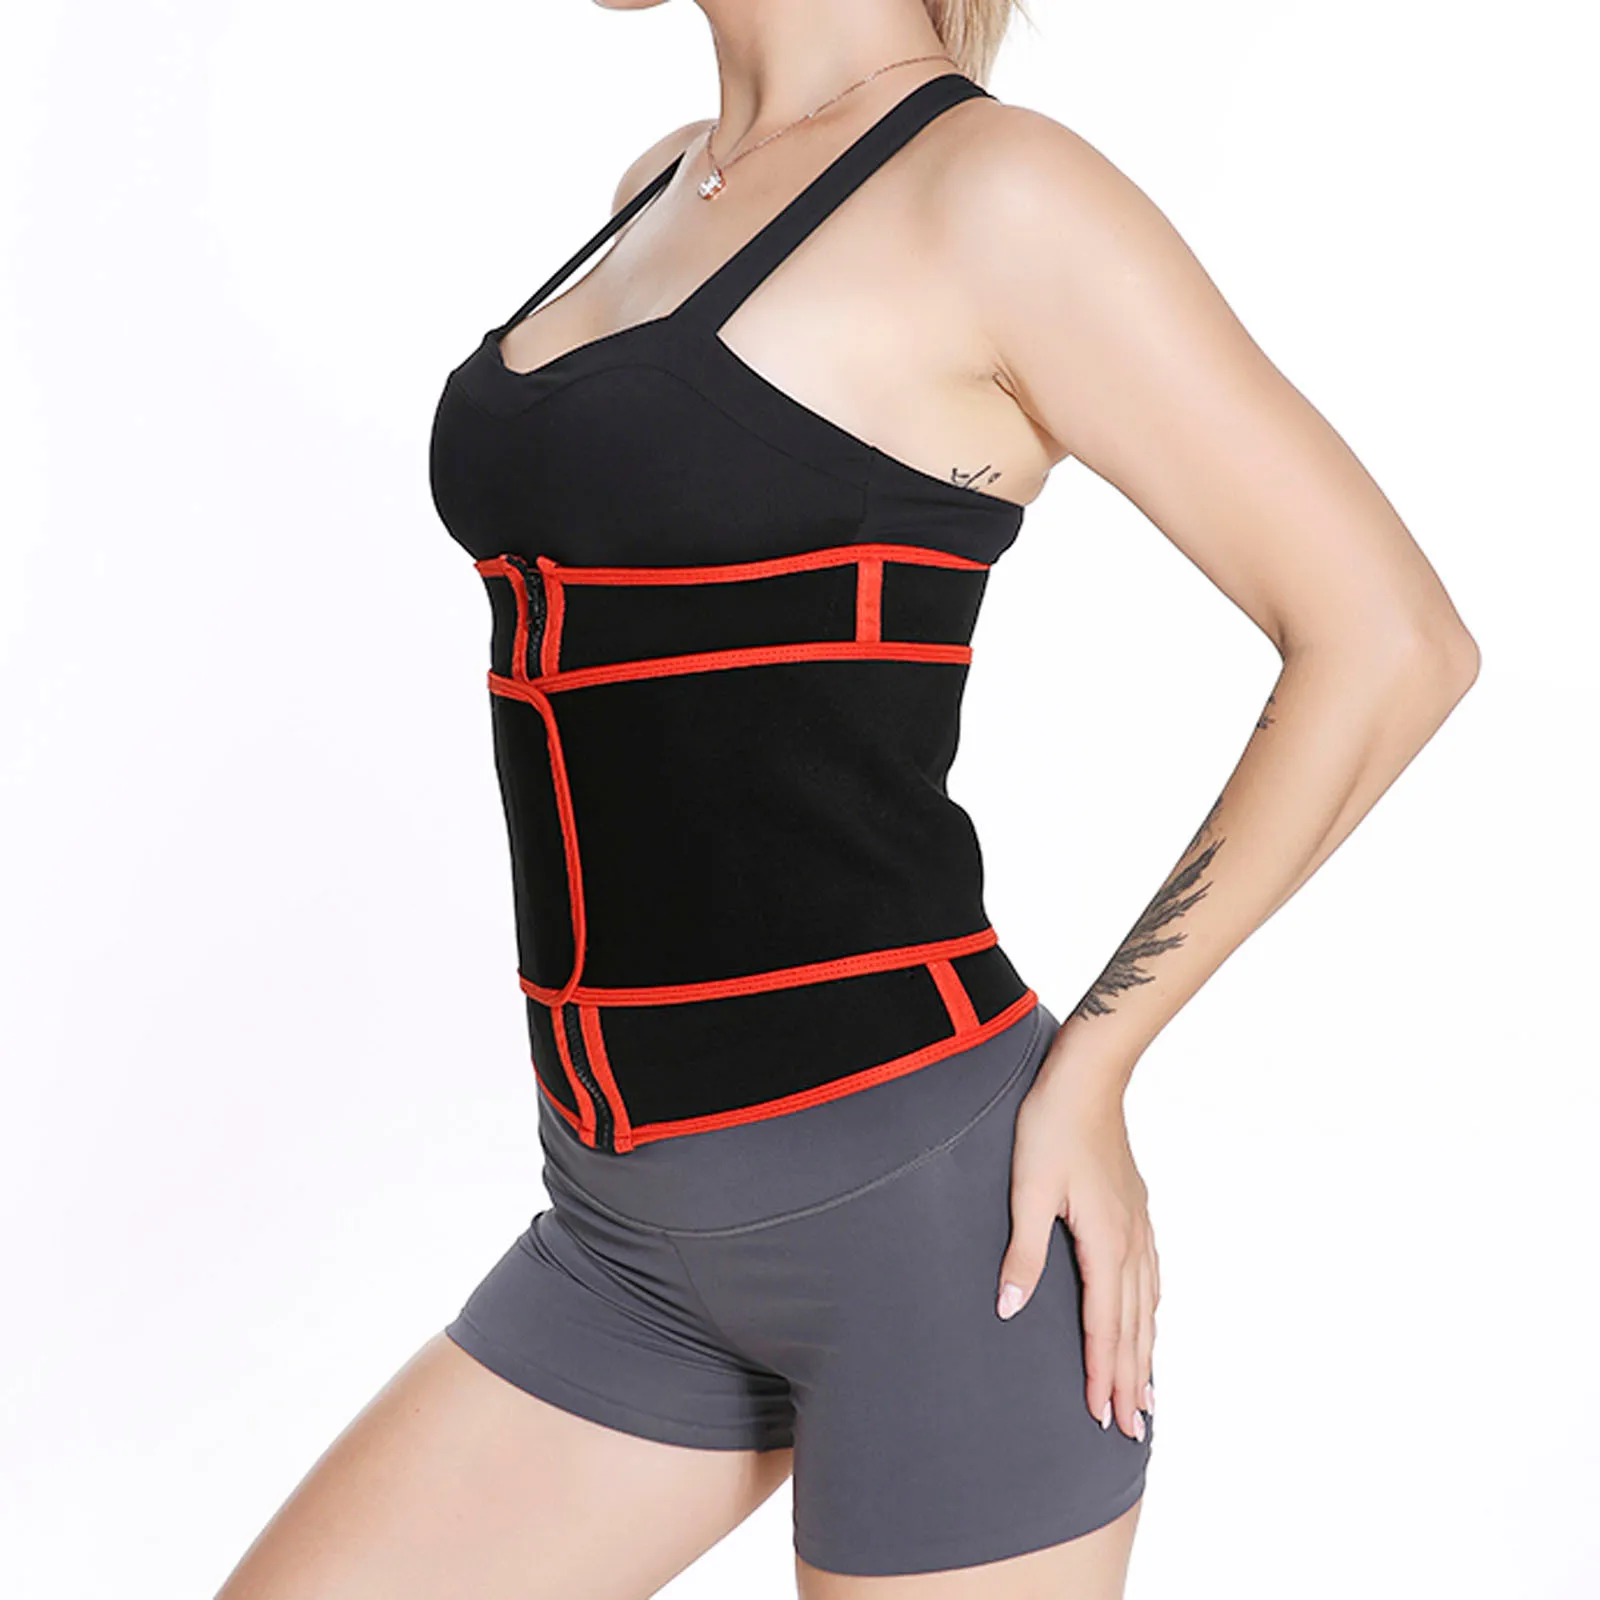 

Women Waist Trainer Belt Tummy Control Waist Cincher Trimmer Sauna Sweat Workout Girdle Slim Belly Band Sport Girdle